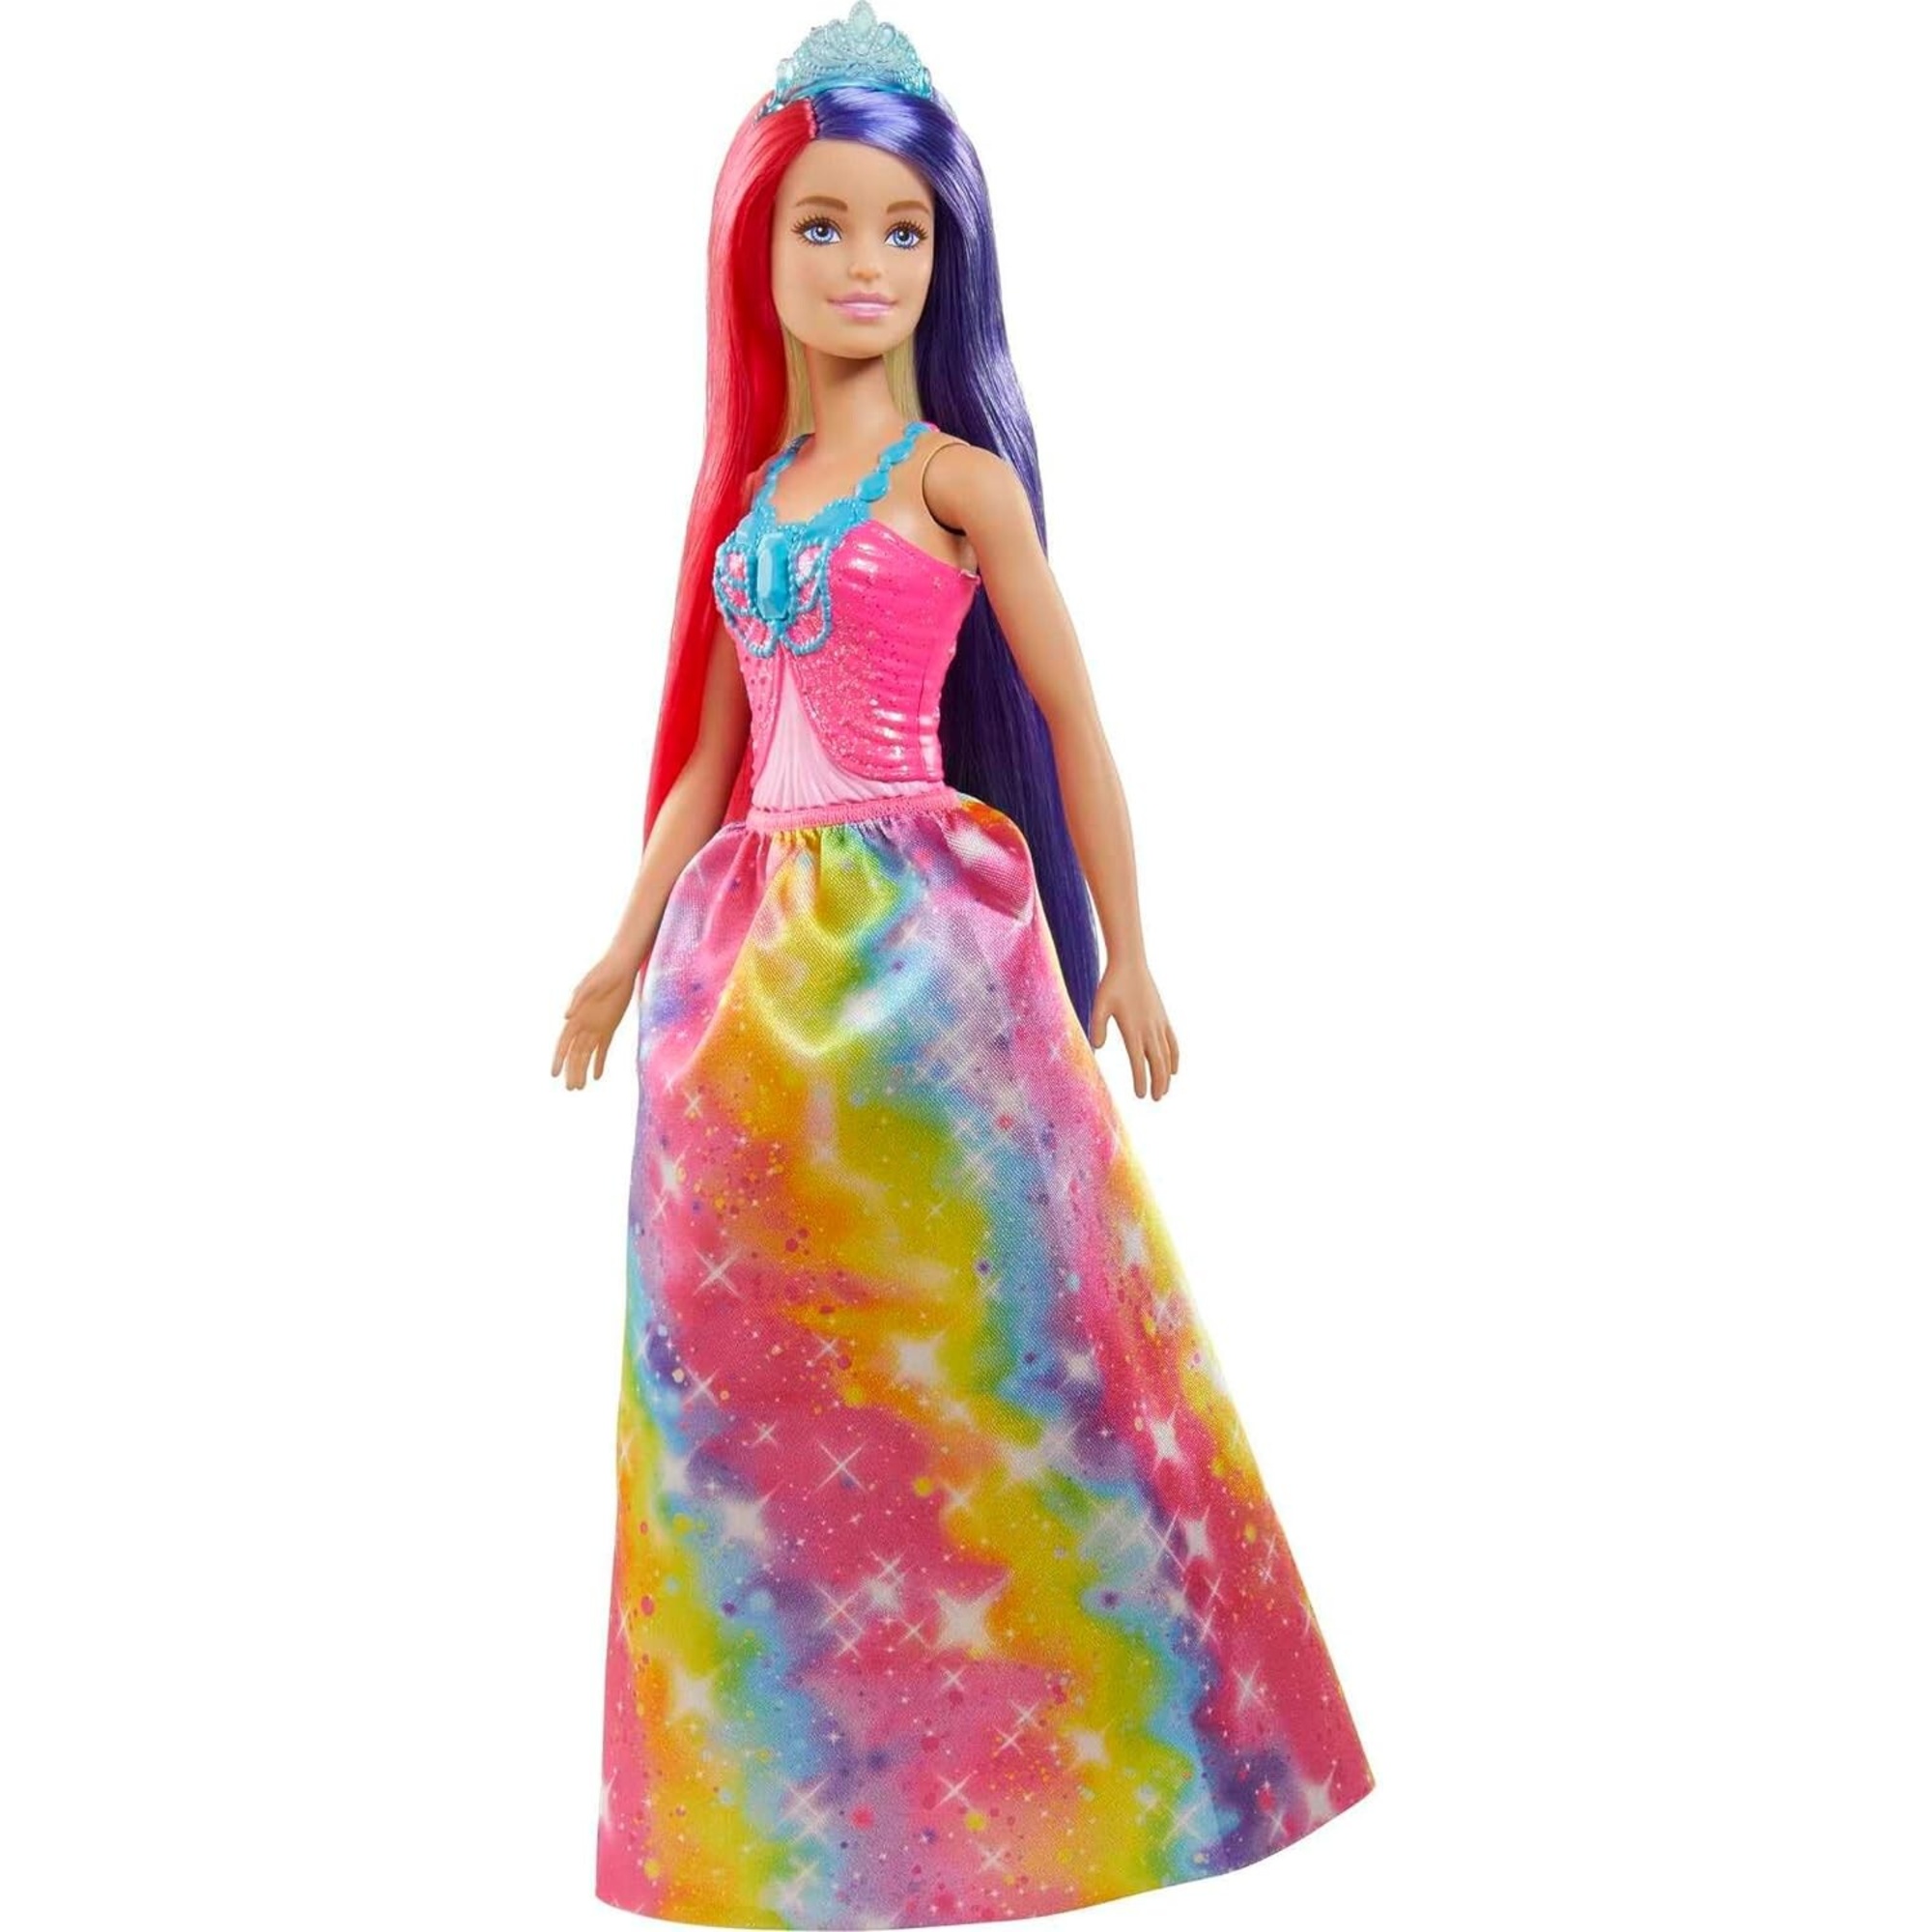 Barbie dreamtopia bambola royal da circa 30cm con lunghissimi capelli fantasia e accessori, giocattolo per bambini 3+anni - gtf38 - Barbie